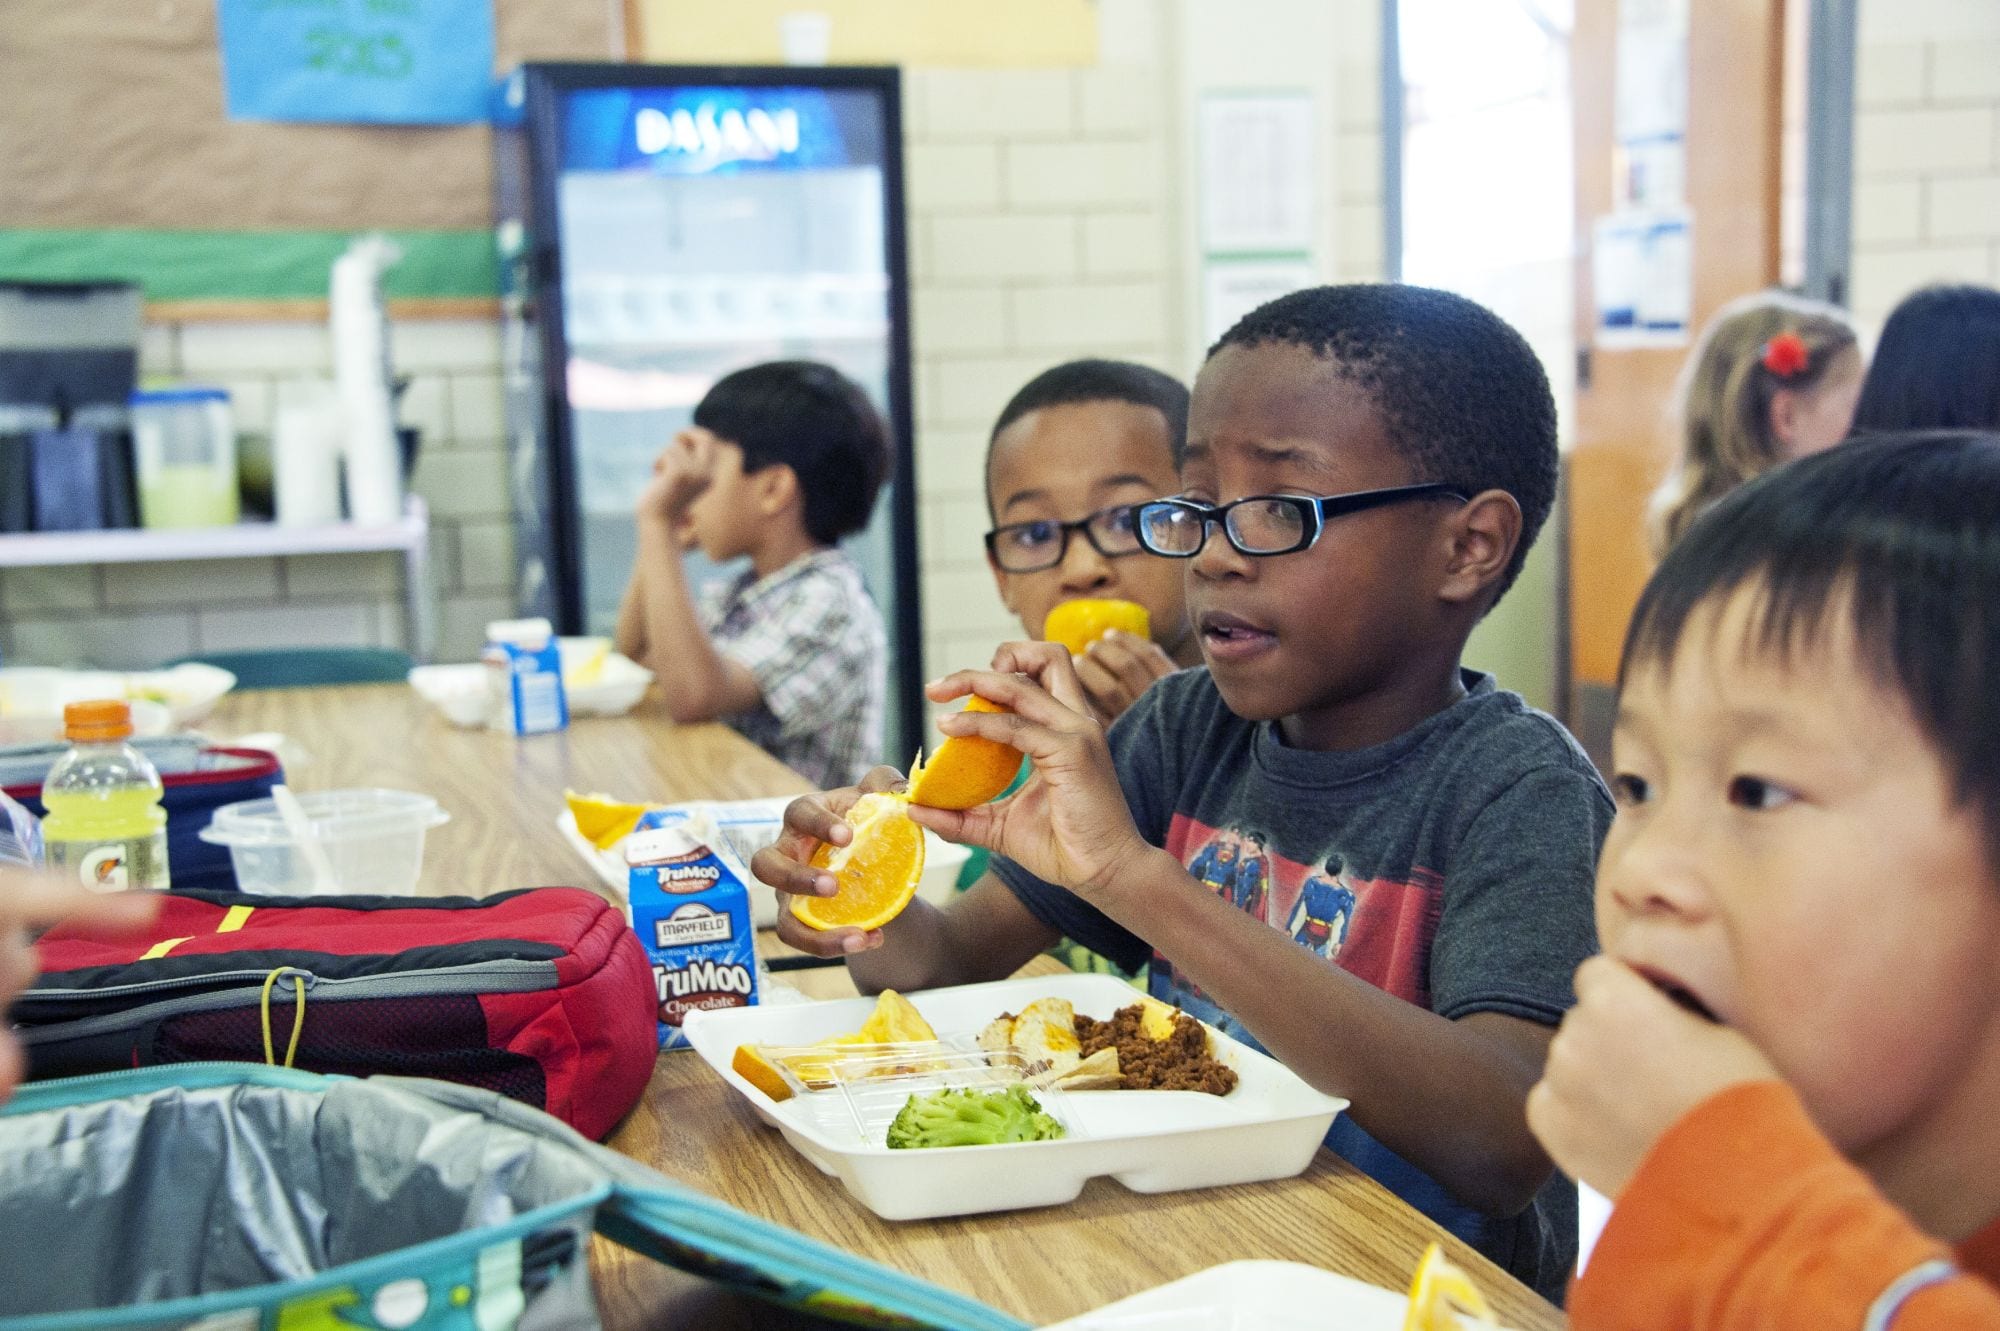 Kids eating school lunch - nut free school vs nut aware school